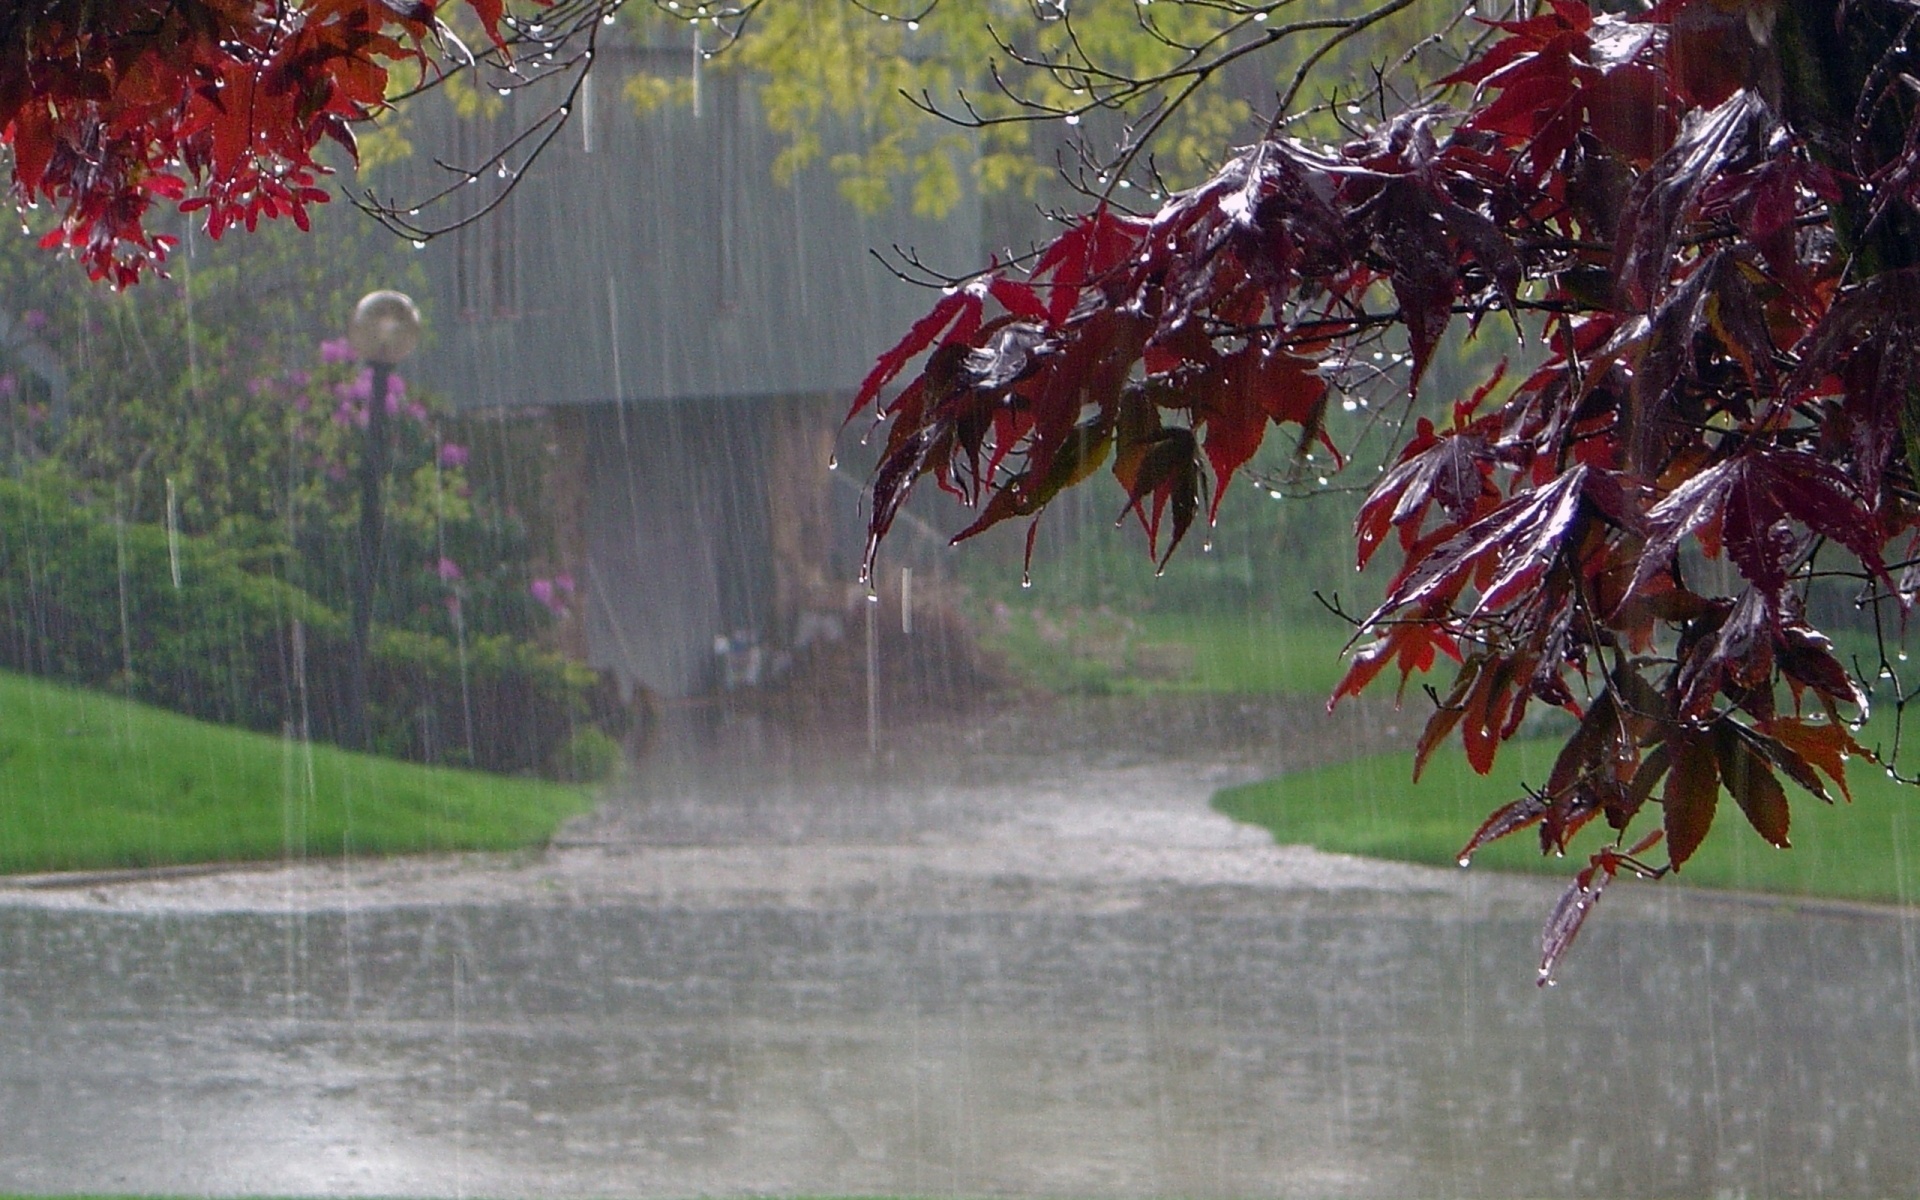 XƏBƏRDARLIQ: Rayonlarda hava yağmurlu olacaq, daşqın və sel keçəcək